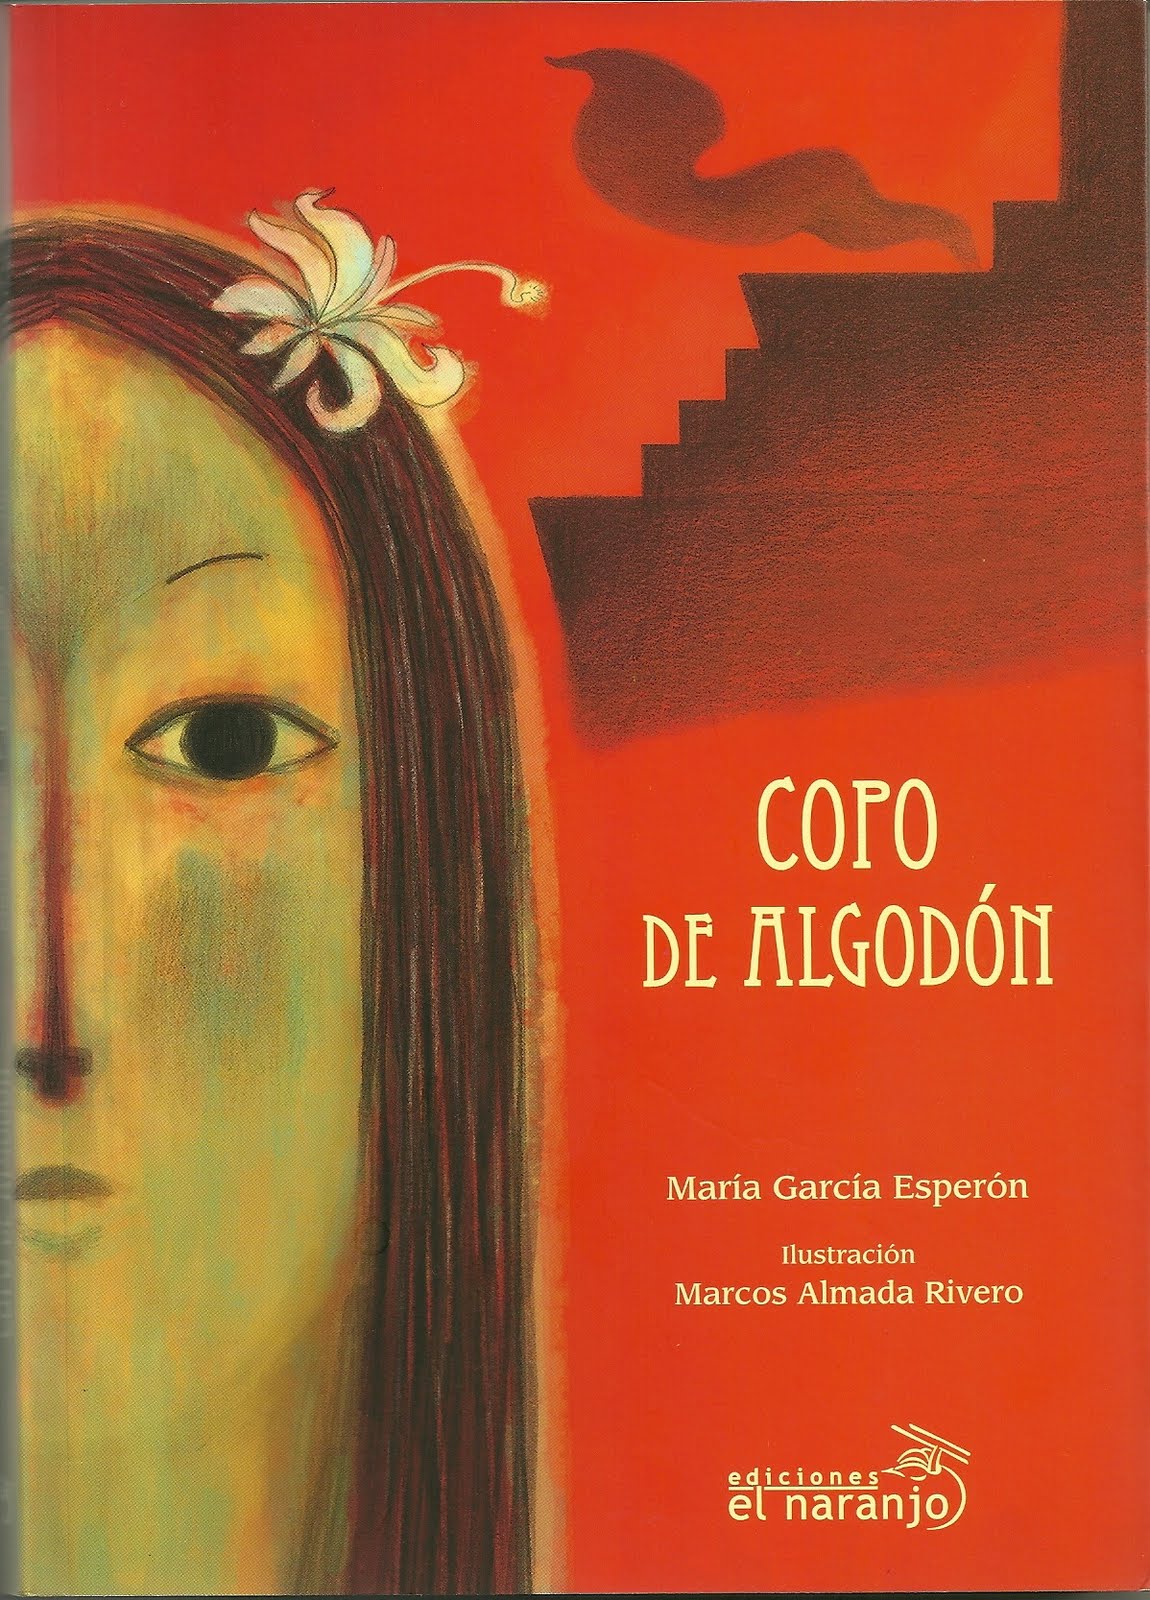 Copo de algodón, María García Esperón, #LEOAUTORASOCT - Mariana lee